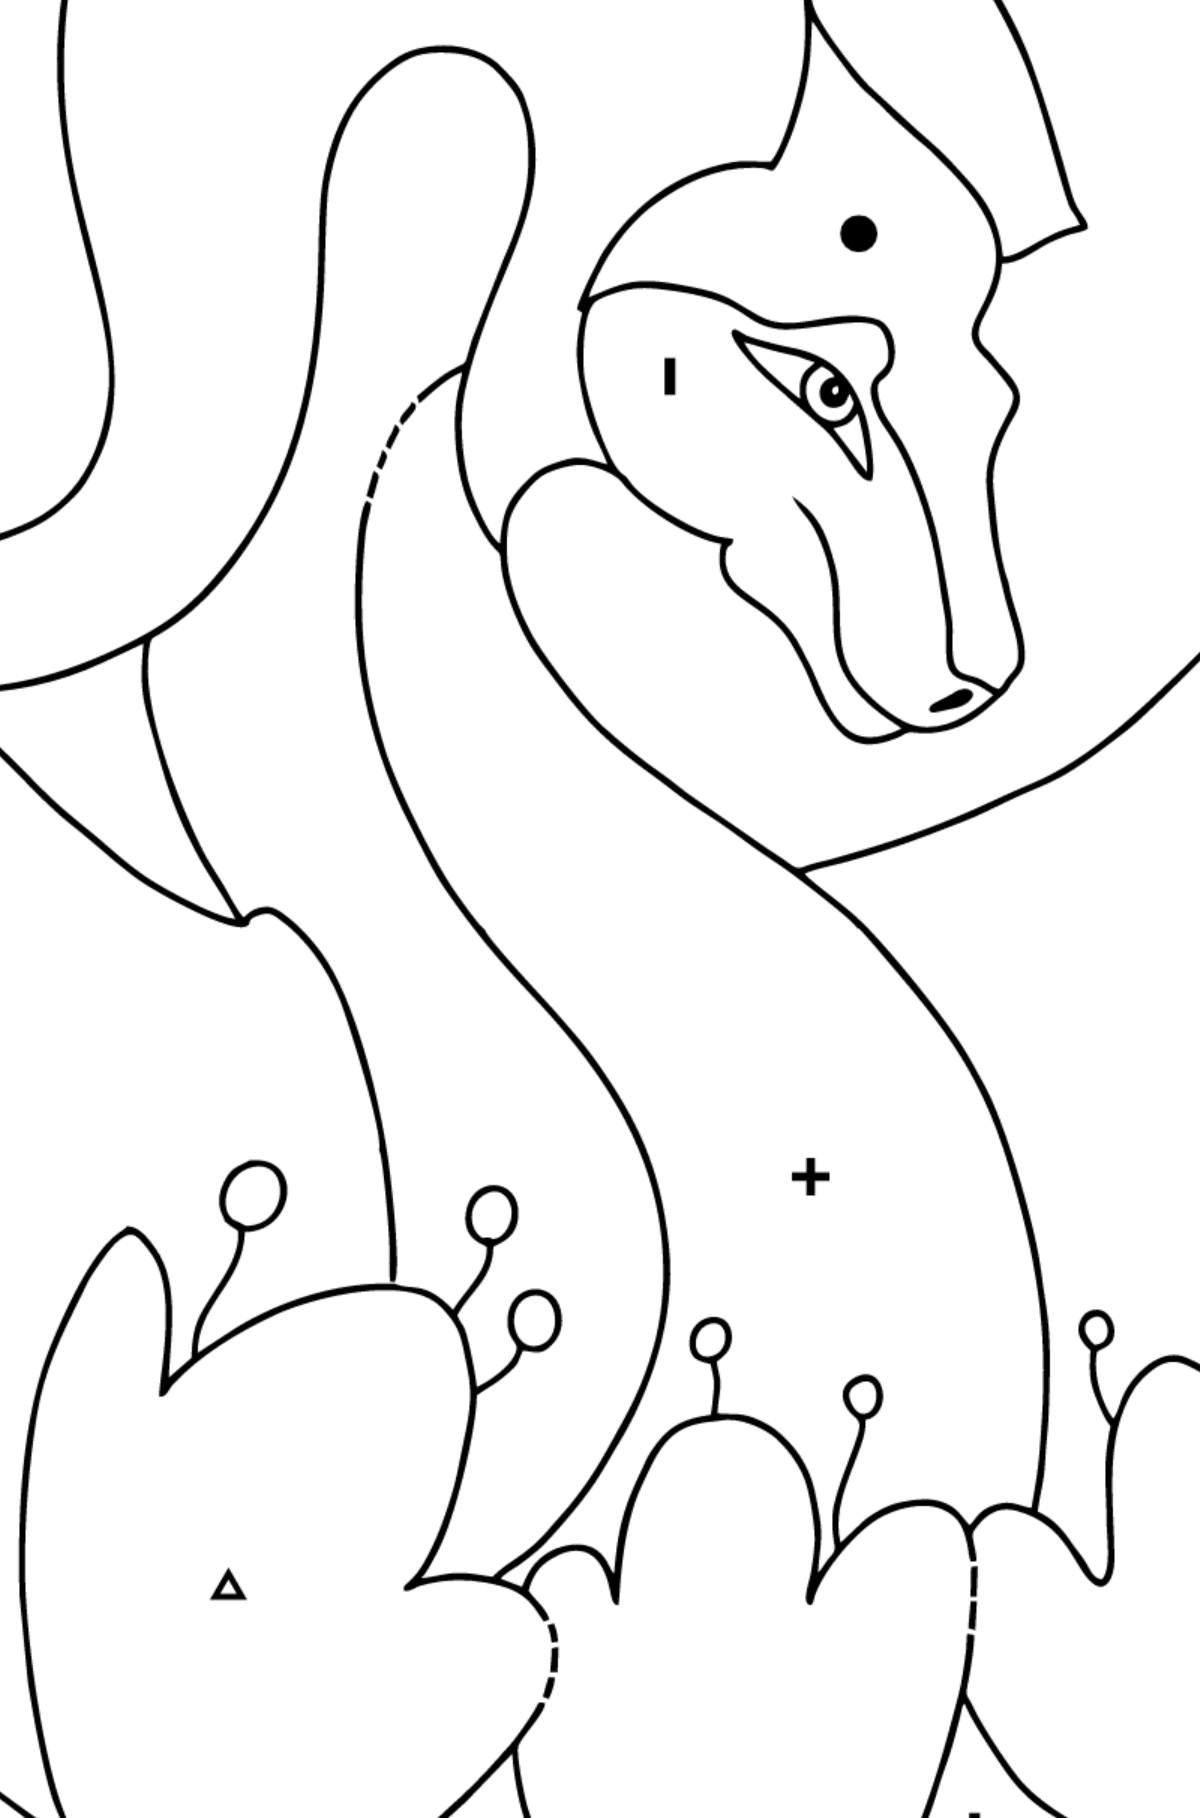 Desenho para colorir dragão colorido (simples) - Colorir por Símbolos para Crianças